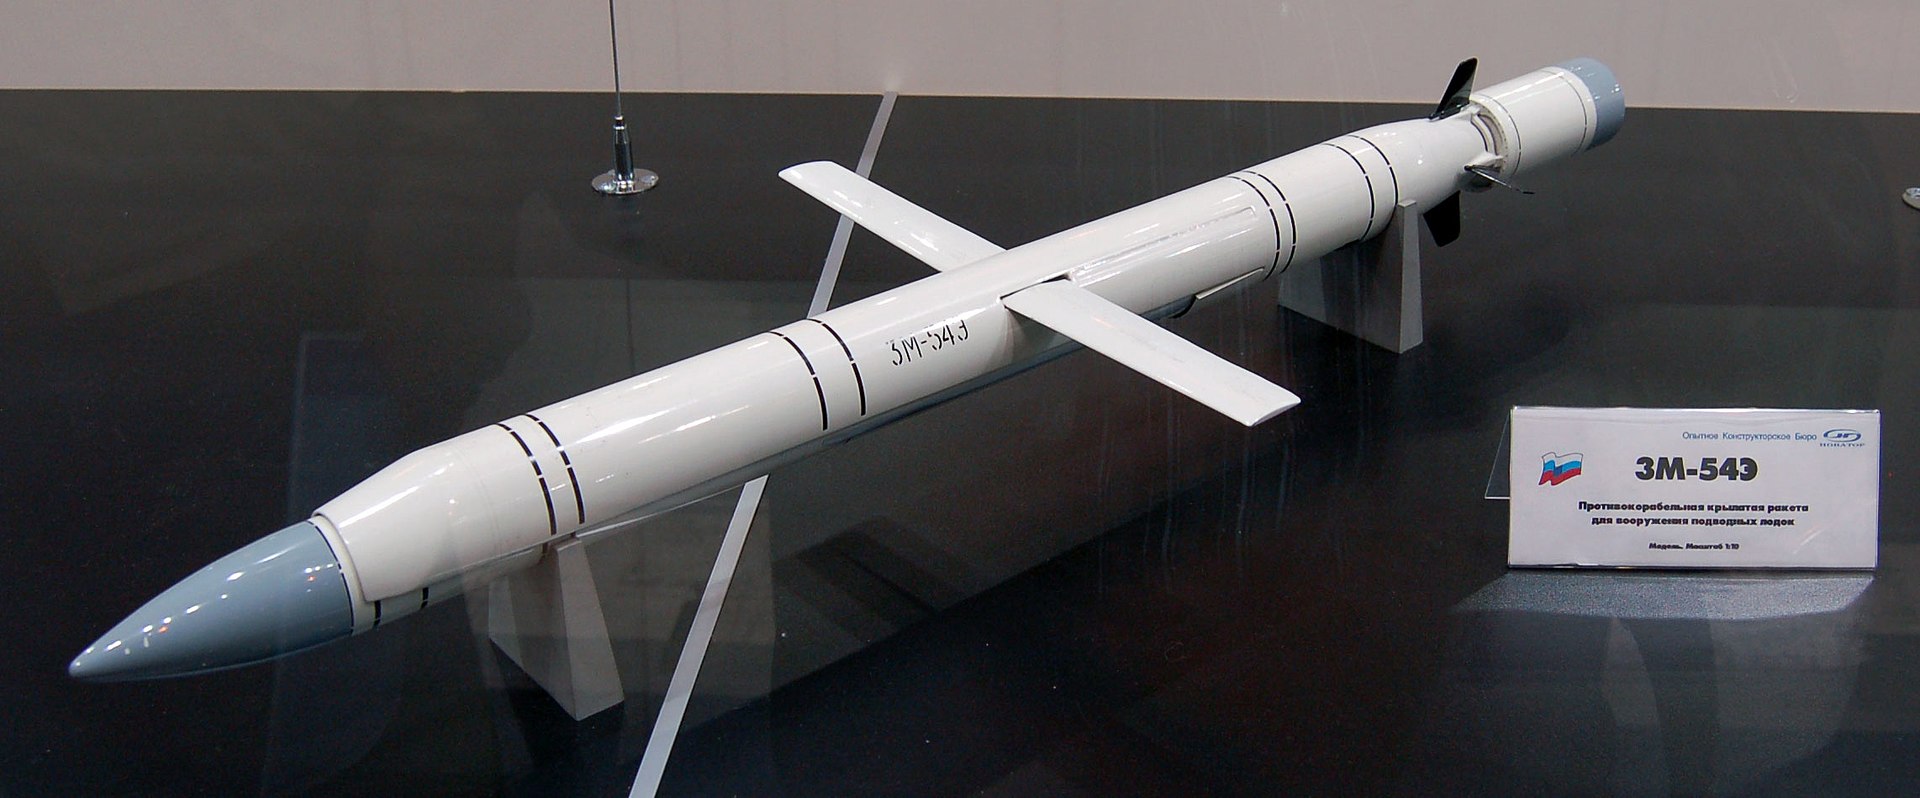 1920px-3M-54E_missile_MAKS2009.jpg